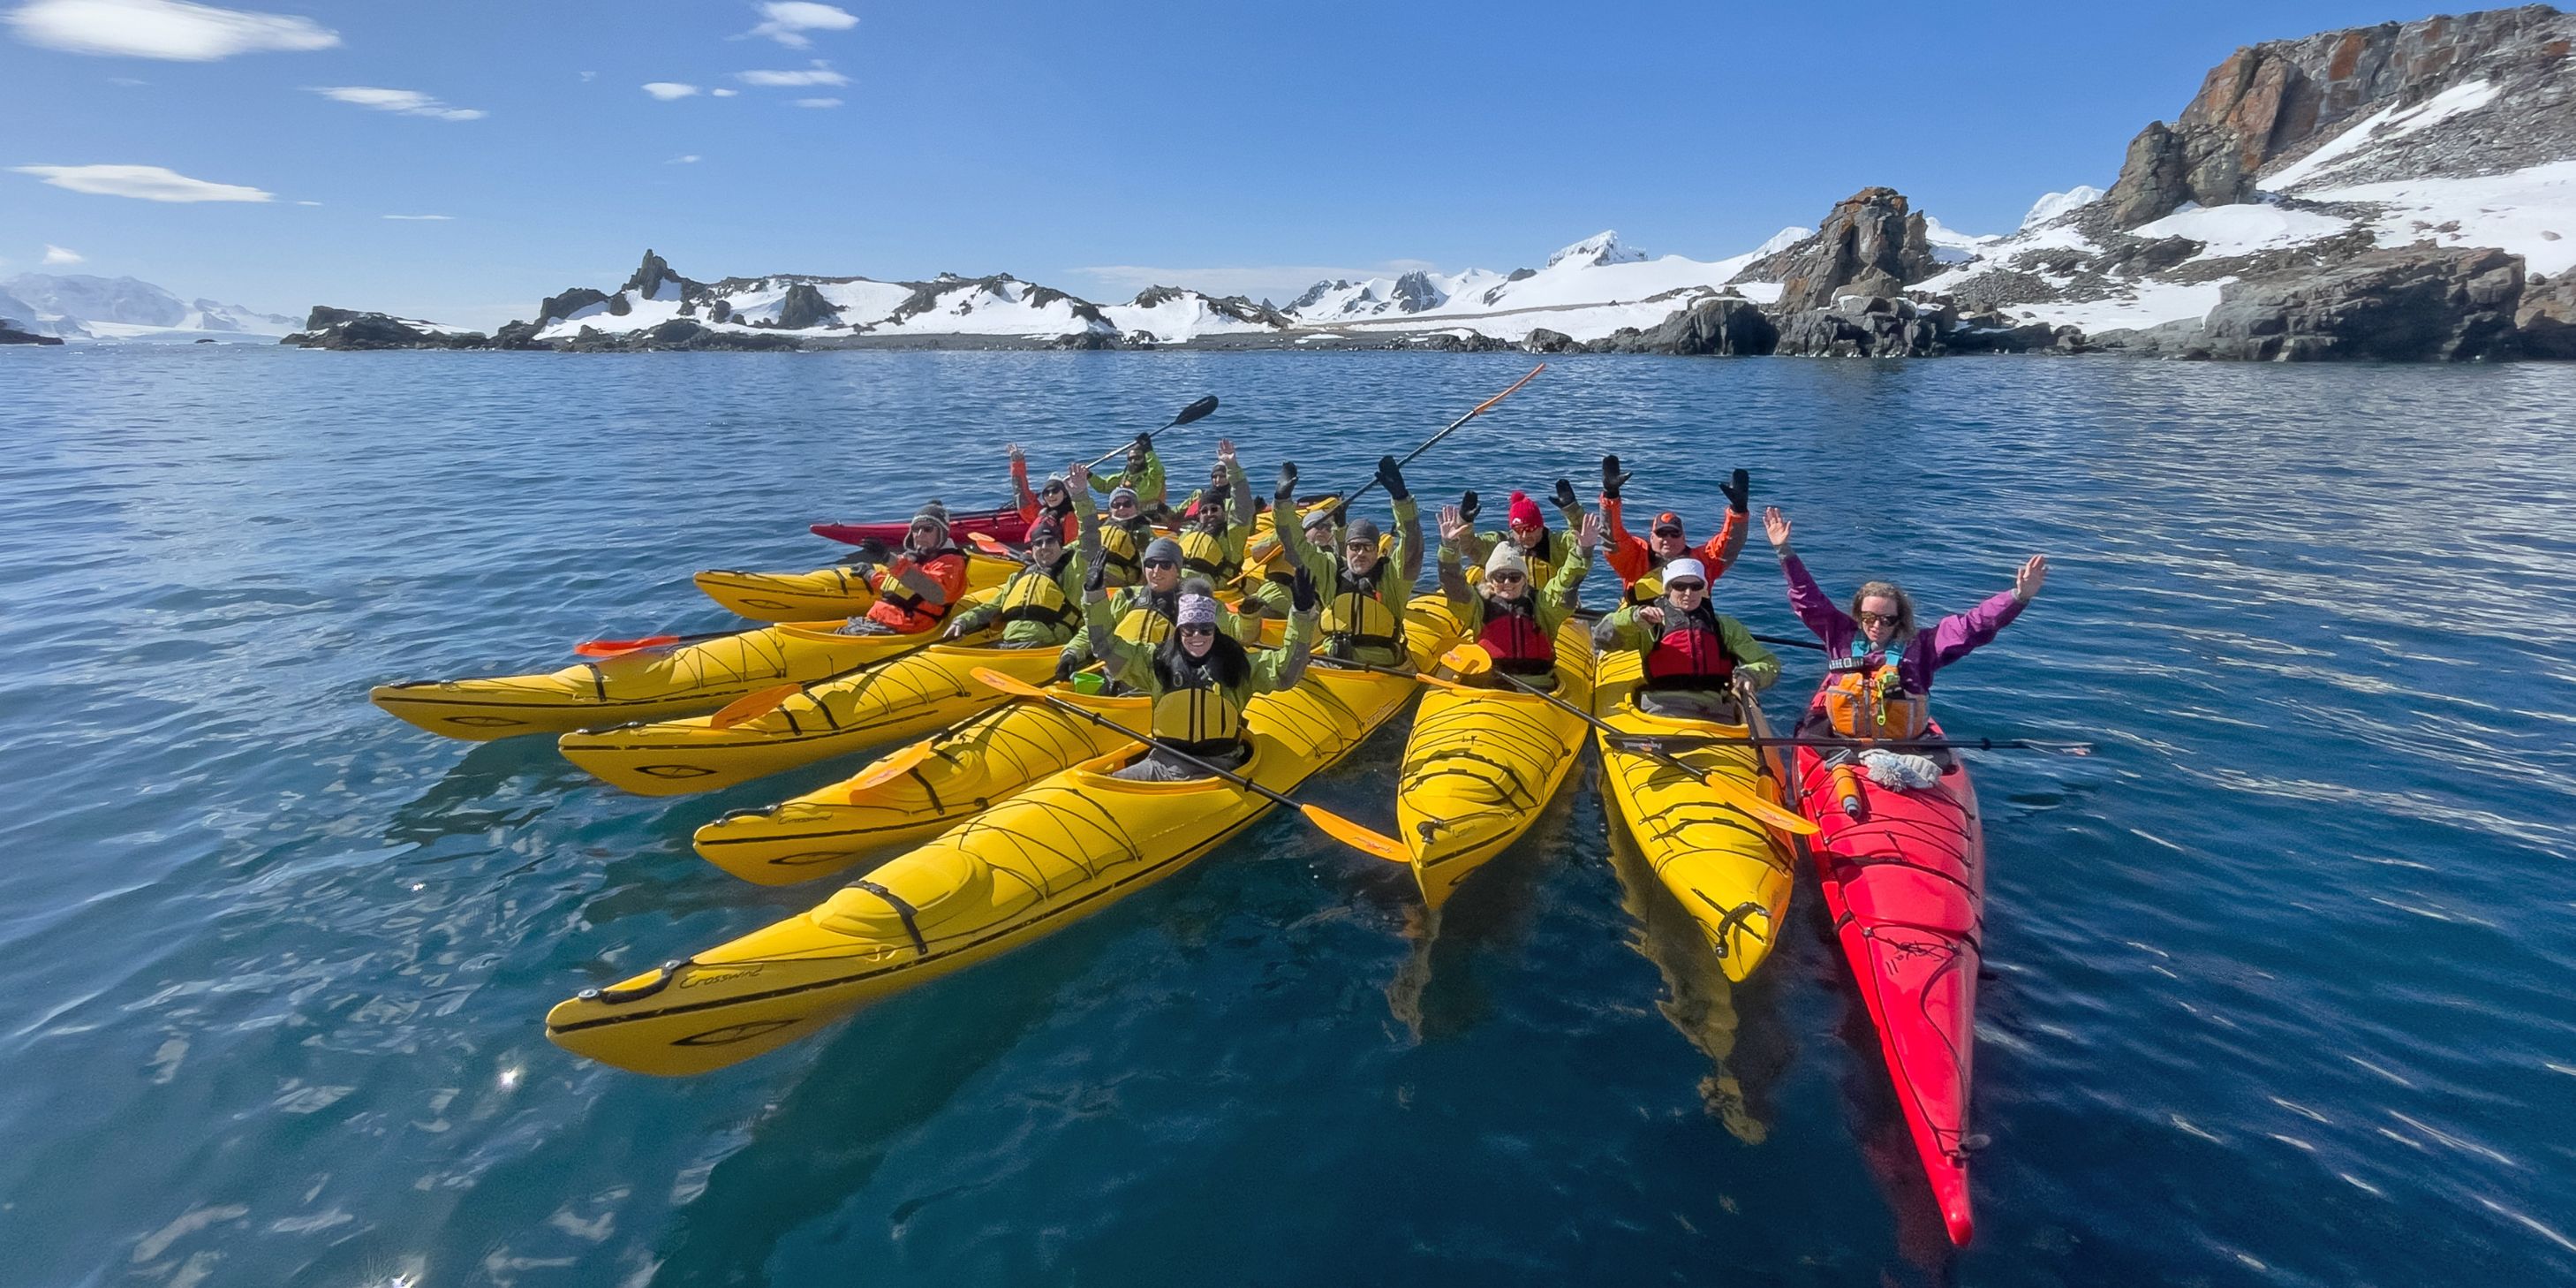 Group of people in sea kayaks in Antarctica